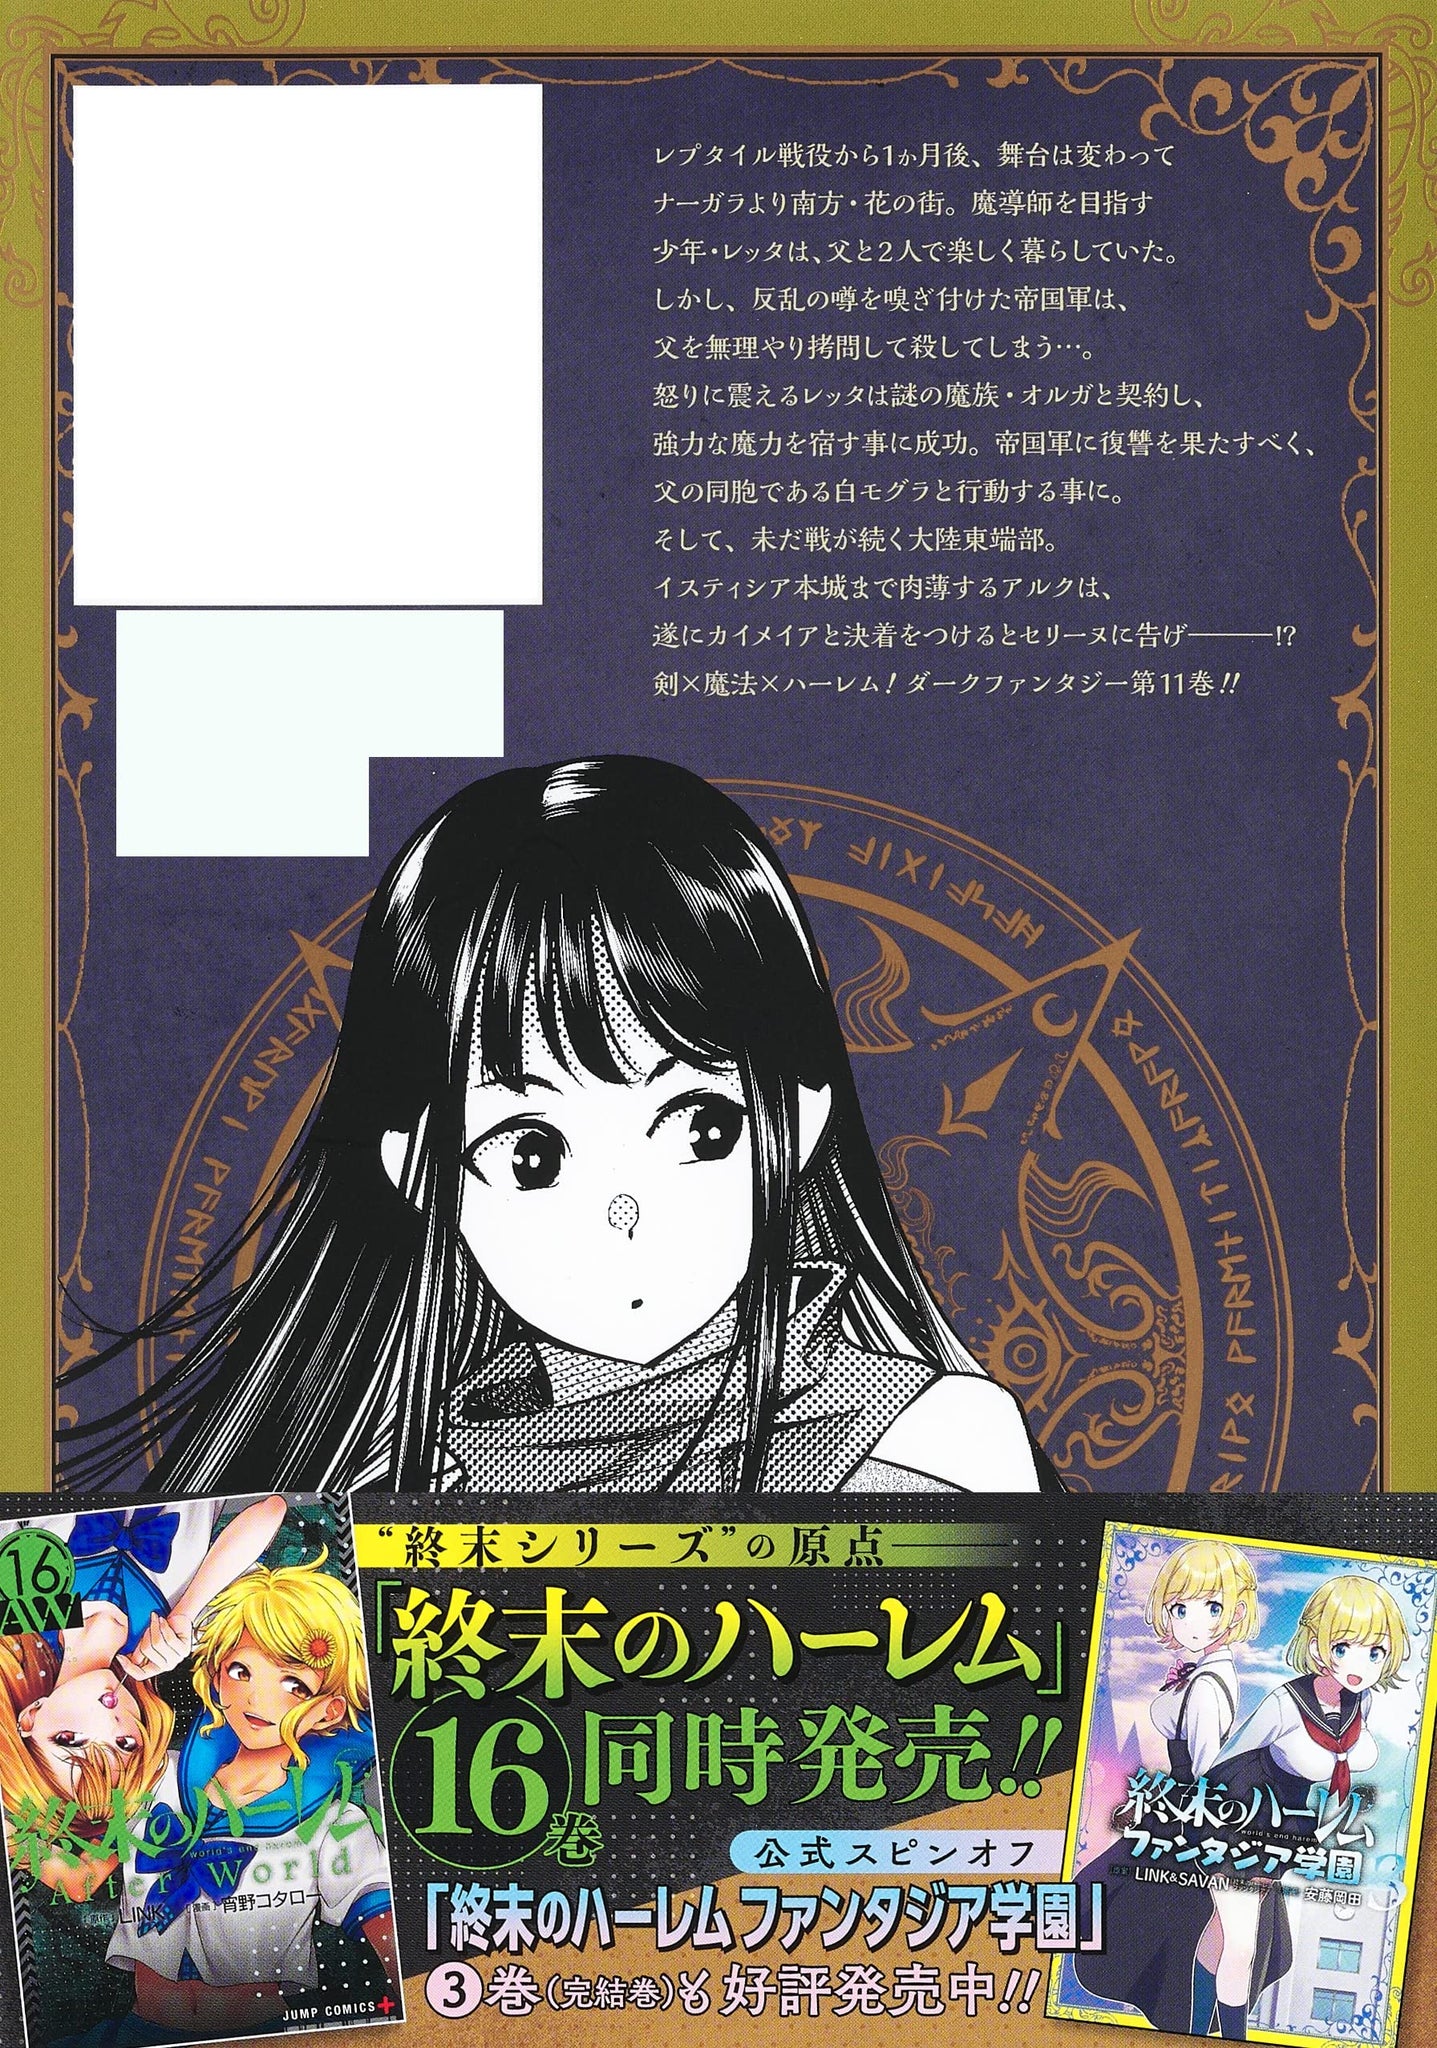 SL] (Request) Shuumatsu no Harem Fantasia/ World's End Harem - Fantasia. :  r/manga